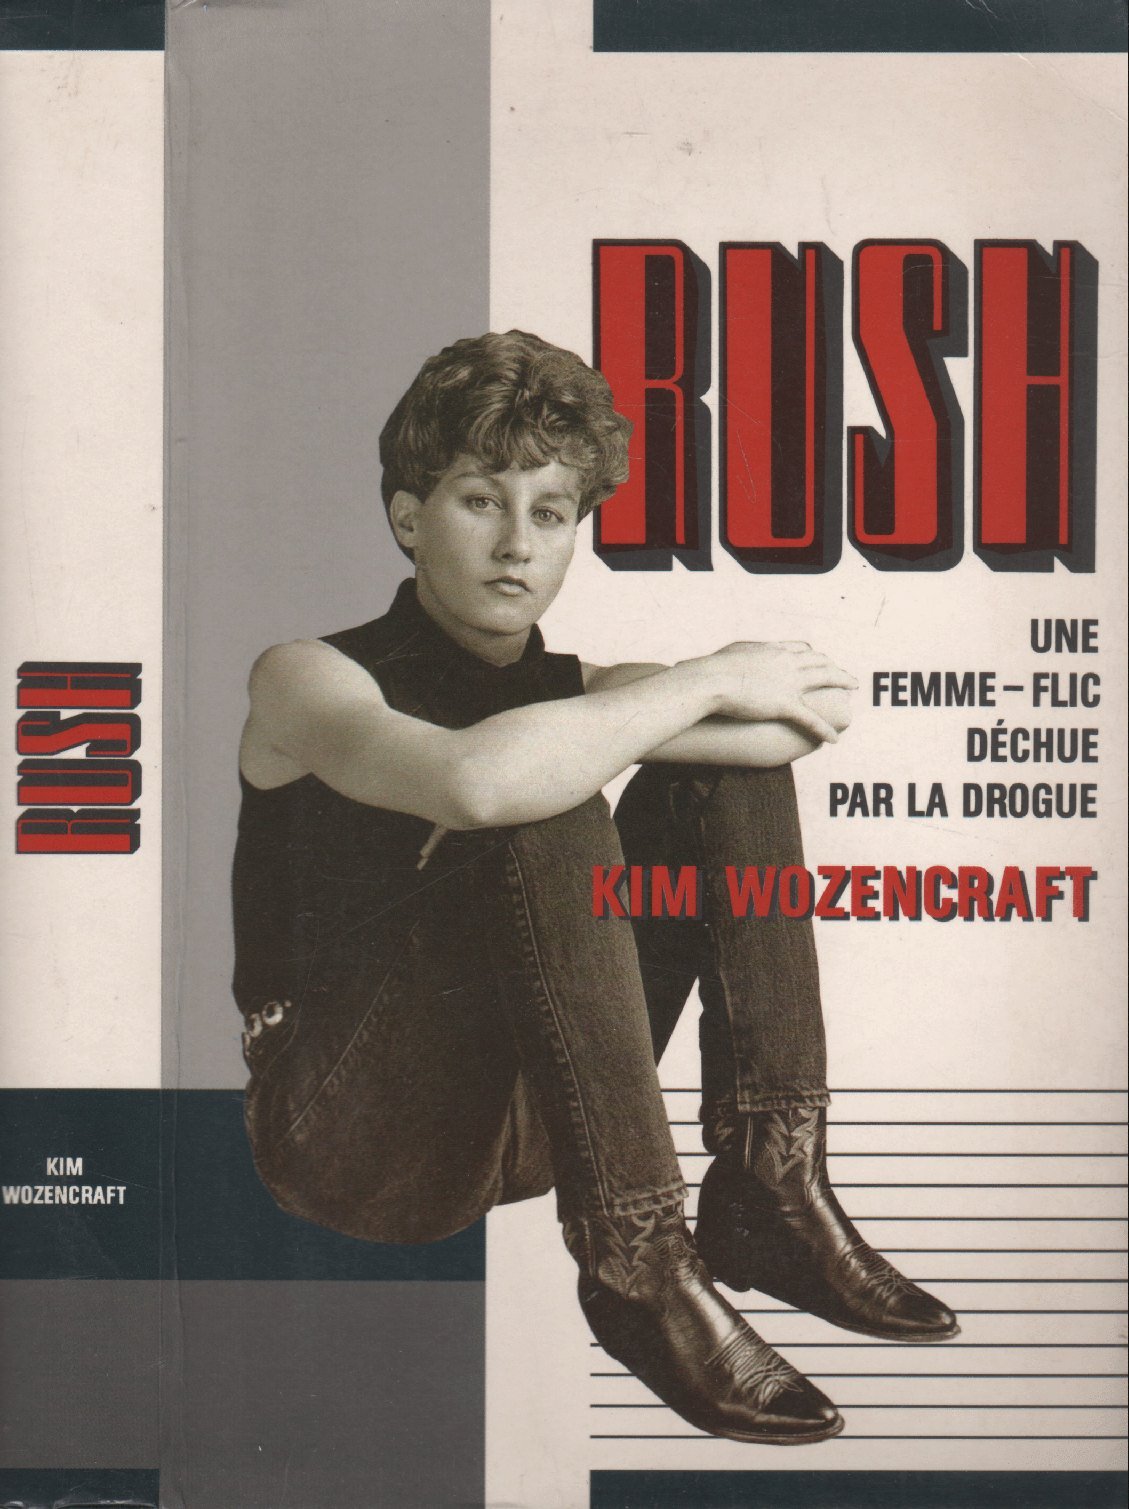 Rush, Une femme-flic déchue par la drogue - Kim Wozencraft